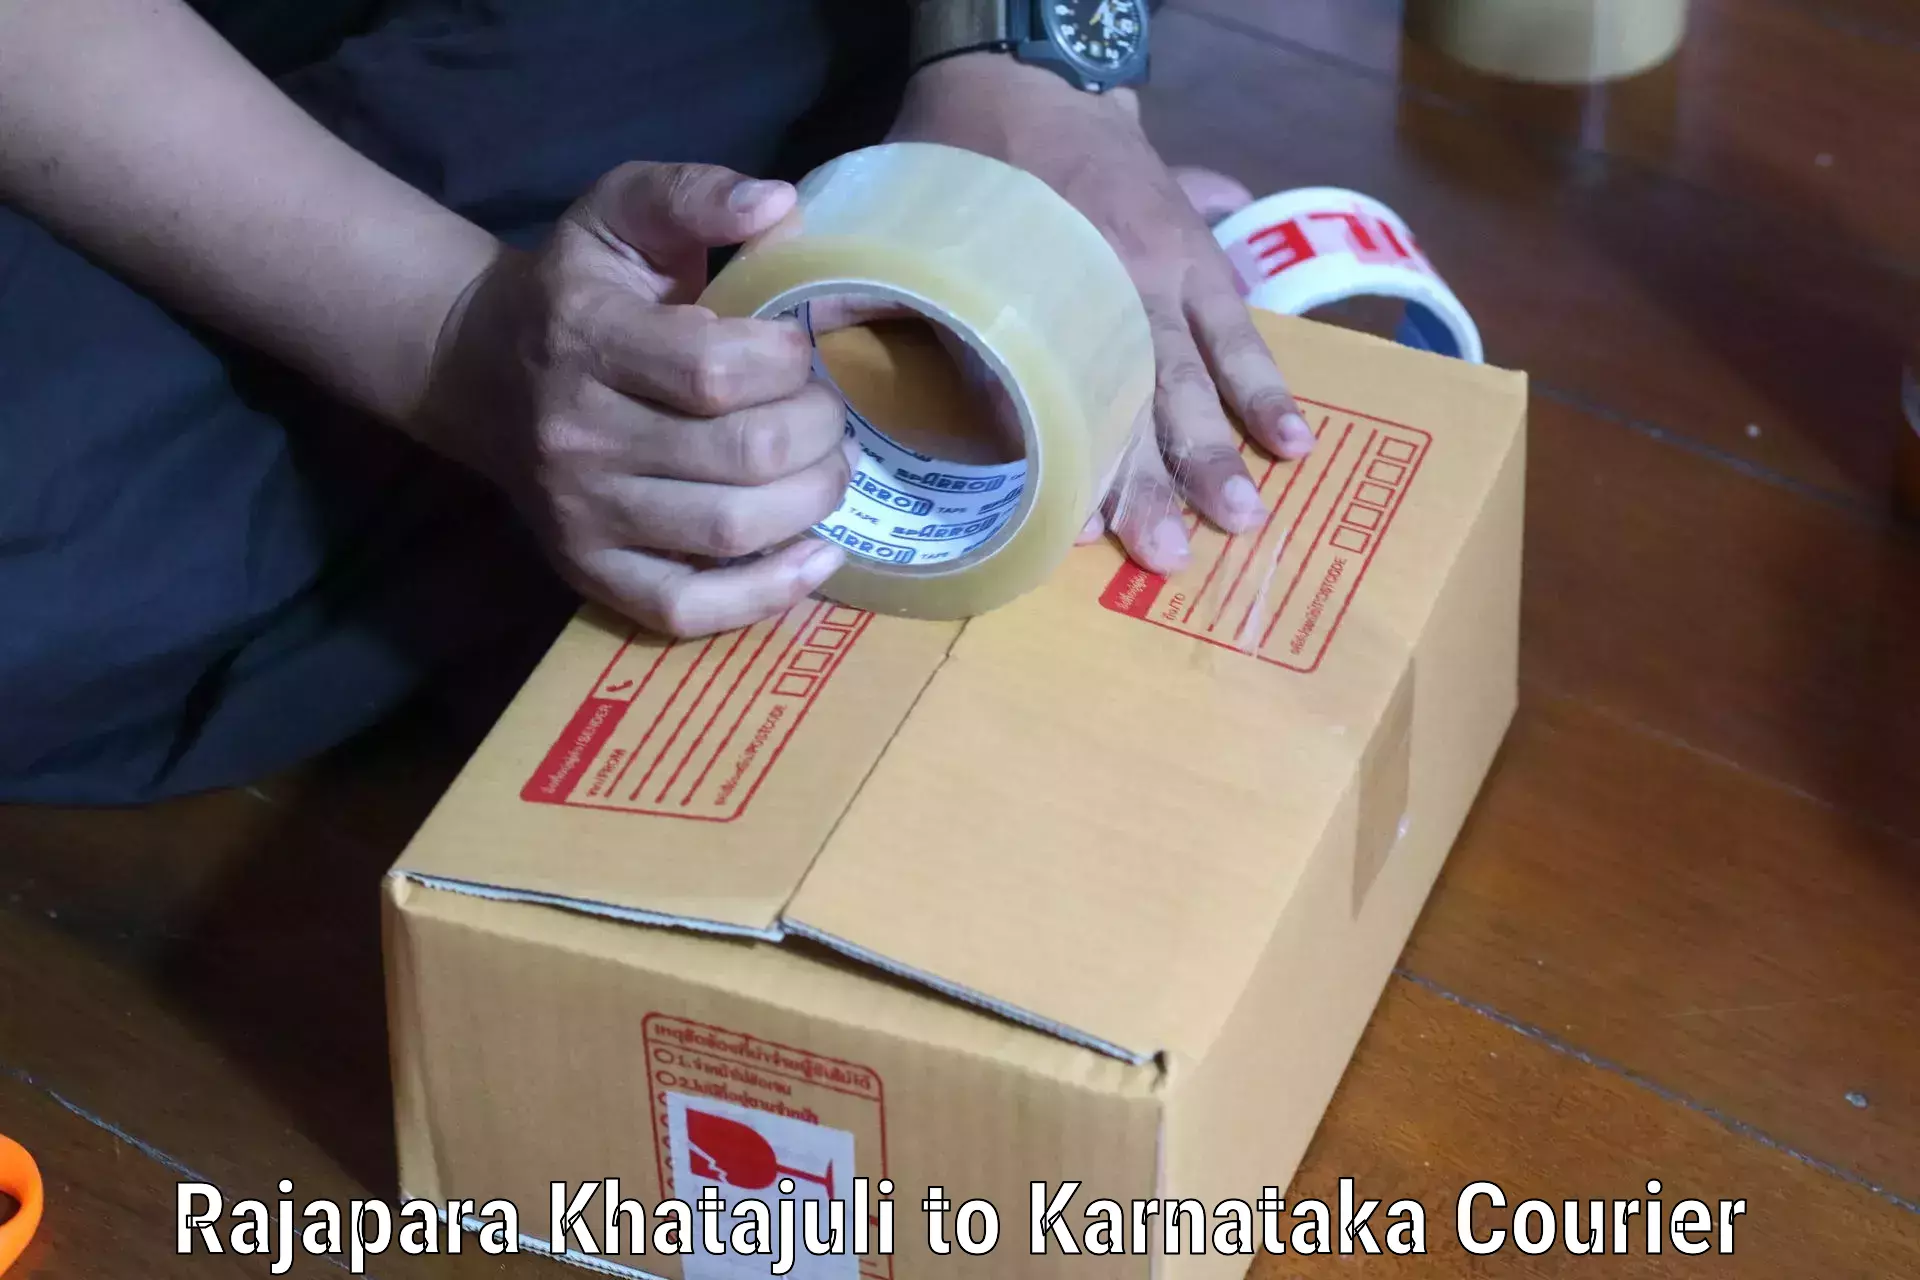 Professional parcel services Rajapara Khatajuli to Bethamangala